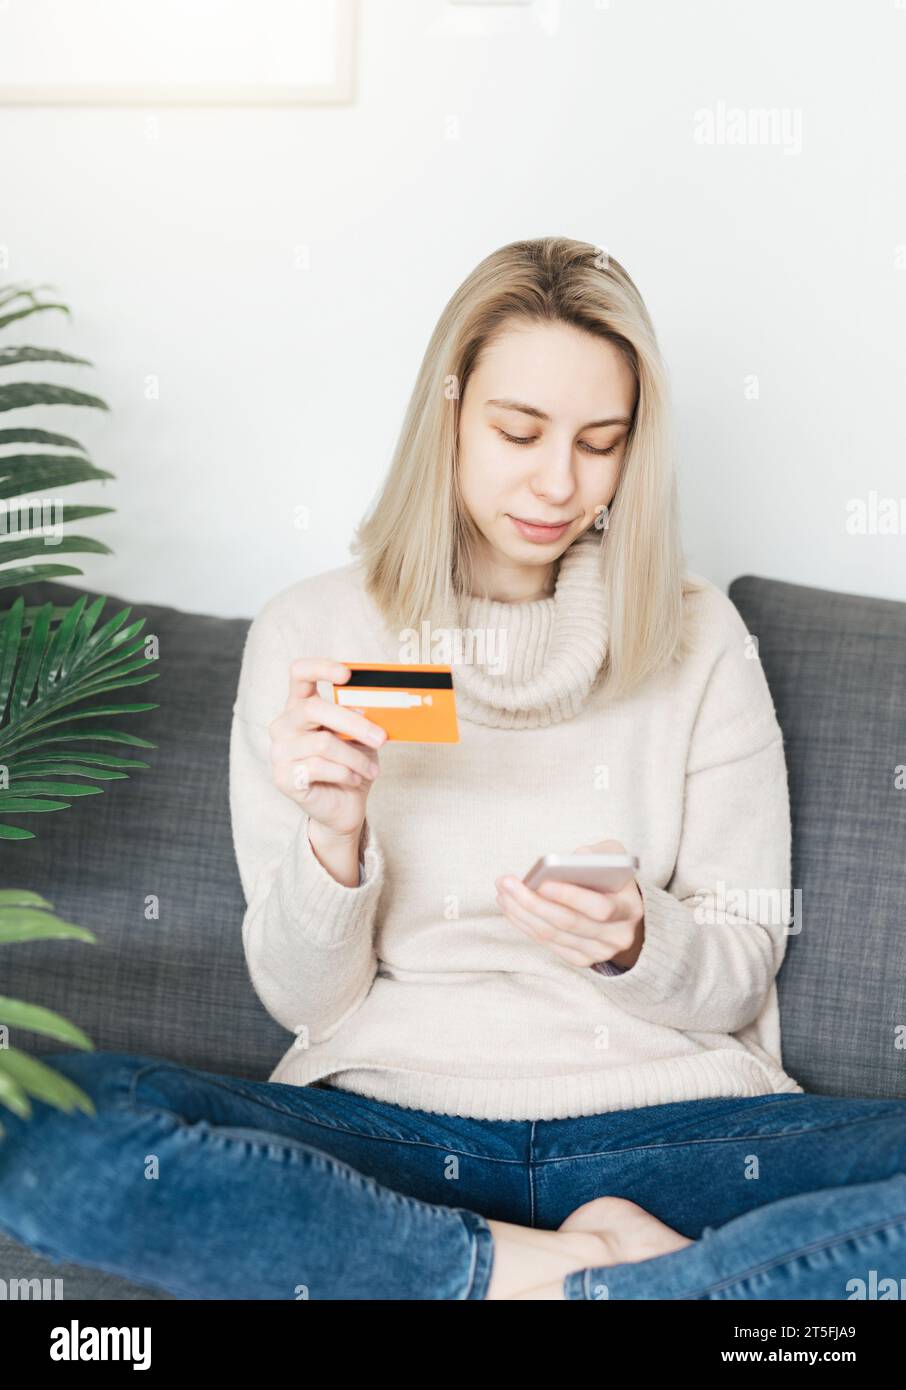 Jeune femme tenant un smartphone et une carte bancaire de crédit, impliquée dans le shopping mobile en ligne à la maison, heureuse femme achetant des biens ou des services Banque D'Images